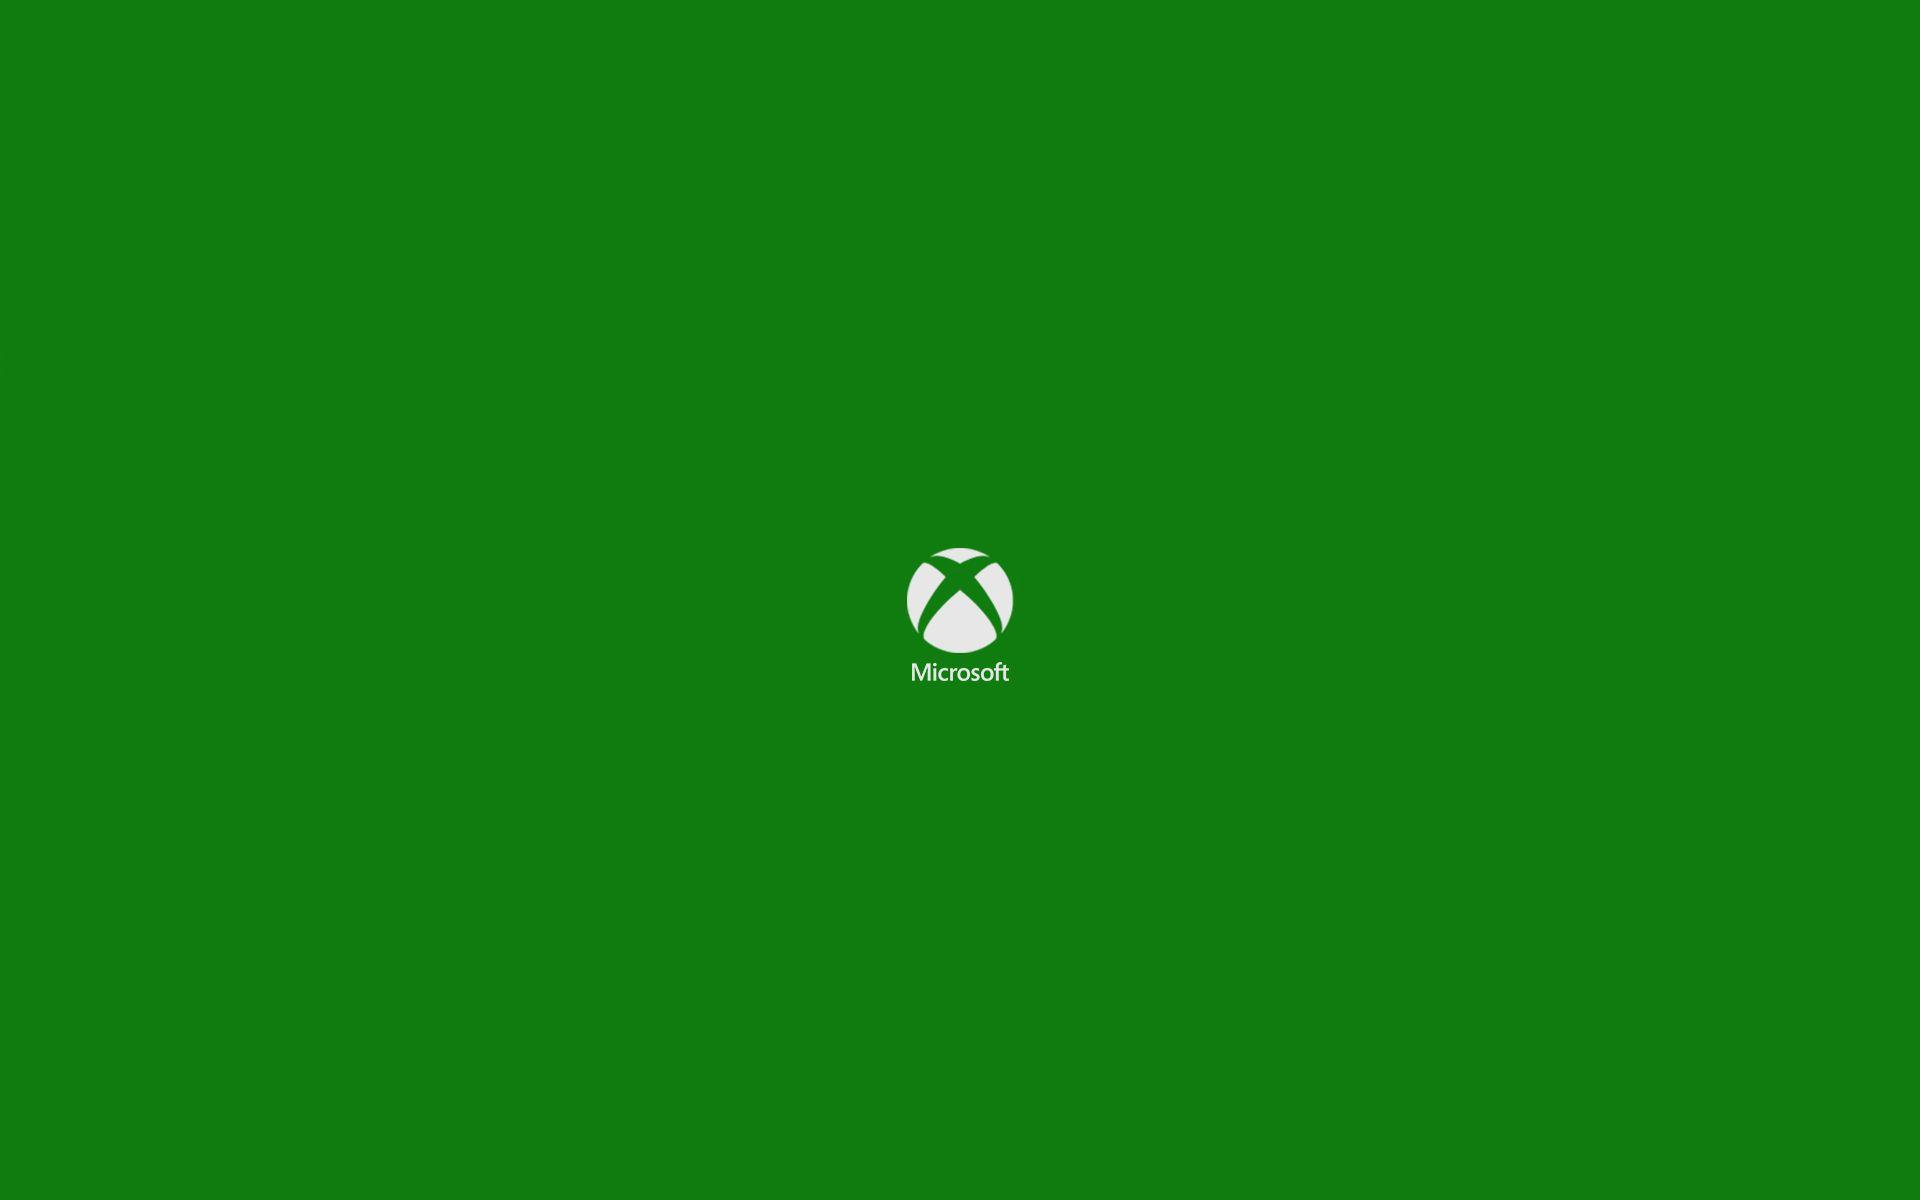 Những hình nền Xbox màu xanh lá cây sẽ khiến cho những ai đam mê game sẽ không thể bỏ qua. Bộ sưu tập này cung cấp những ấn tượng tuyệt đẹp, giúp bạn trang trí cho màn hình của mình trở nên thật sự độc đáo và nổi bật.